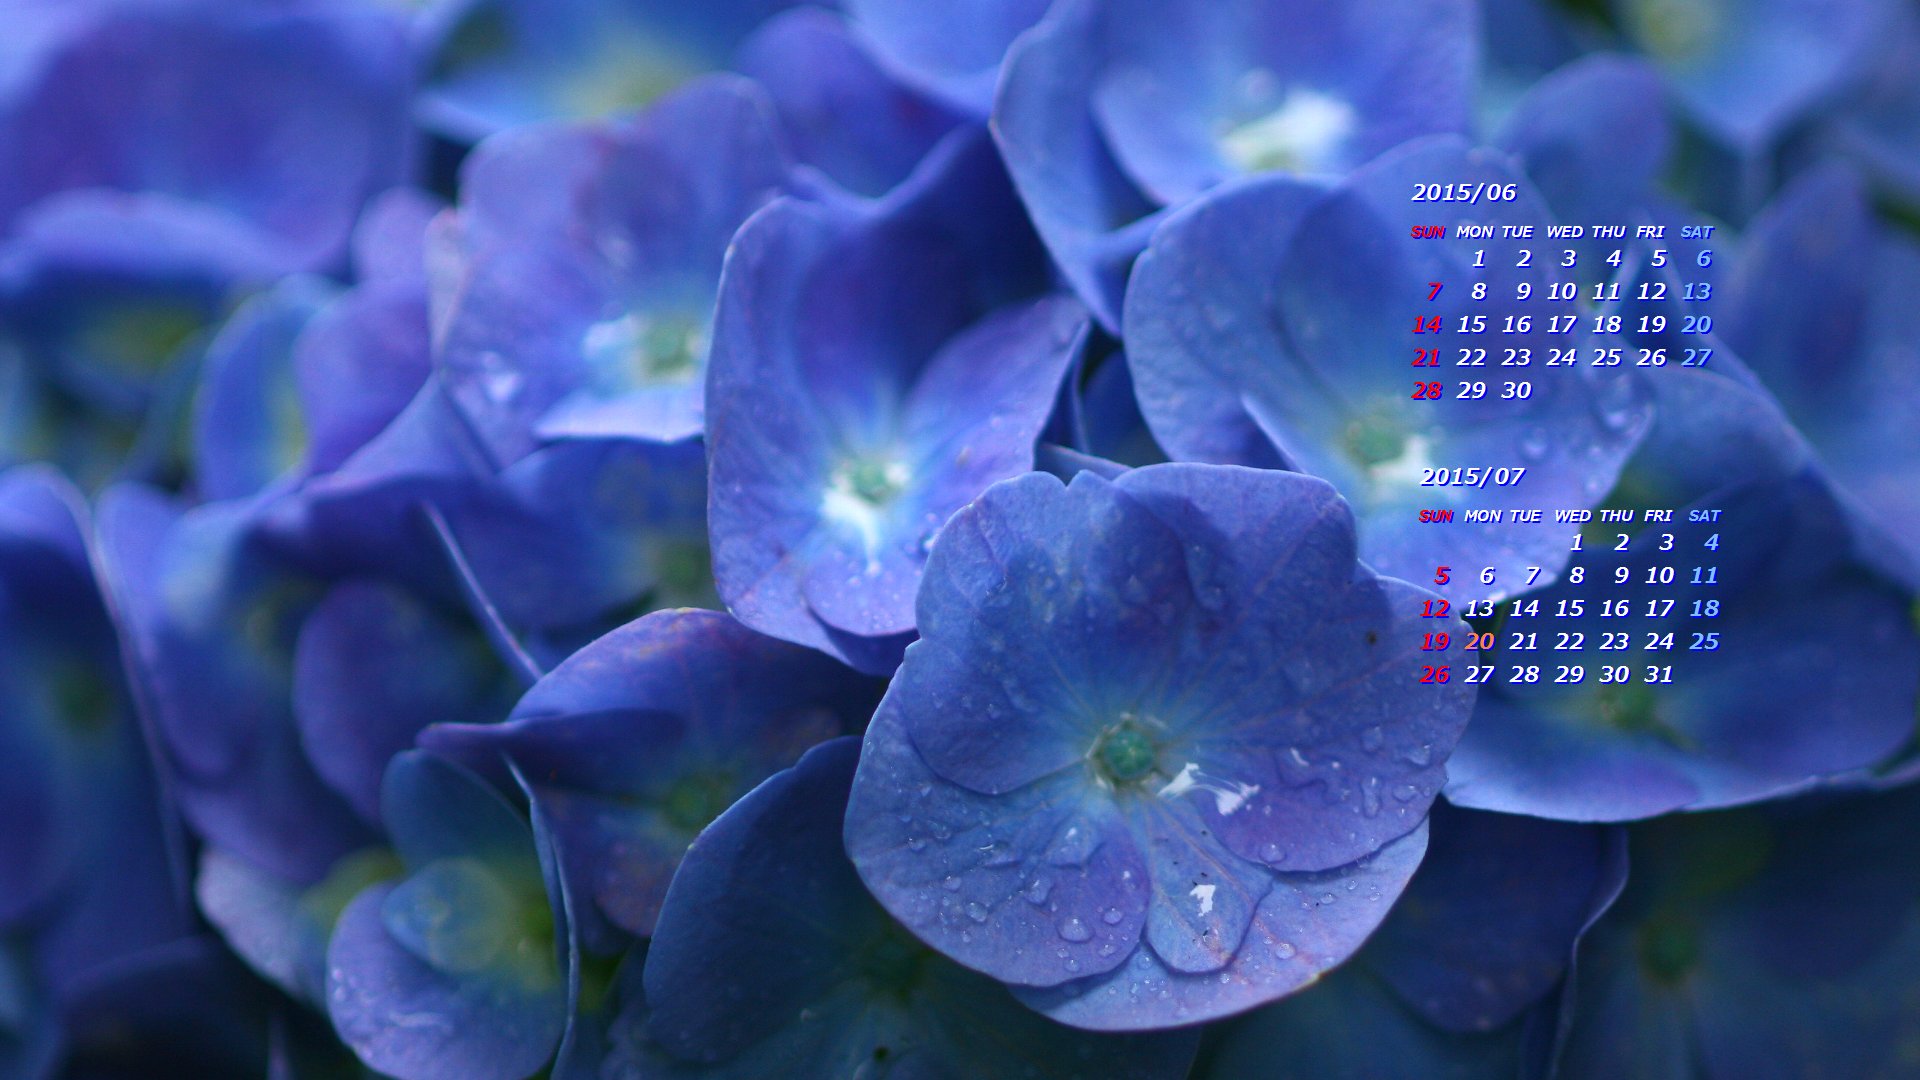 雨と紫陽花 2 カレンダー壁紙館 昴 無料ワイド